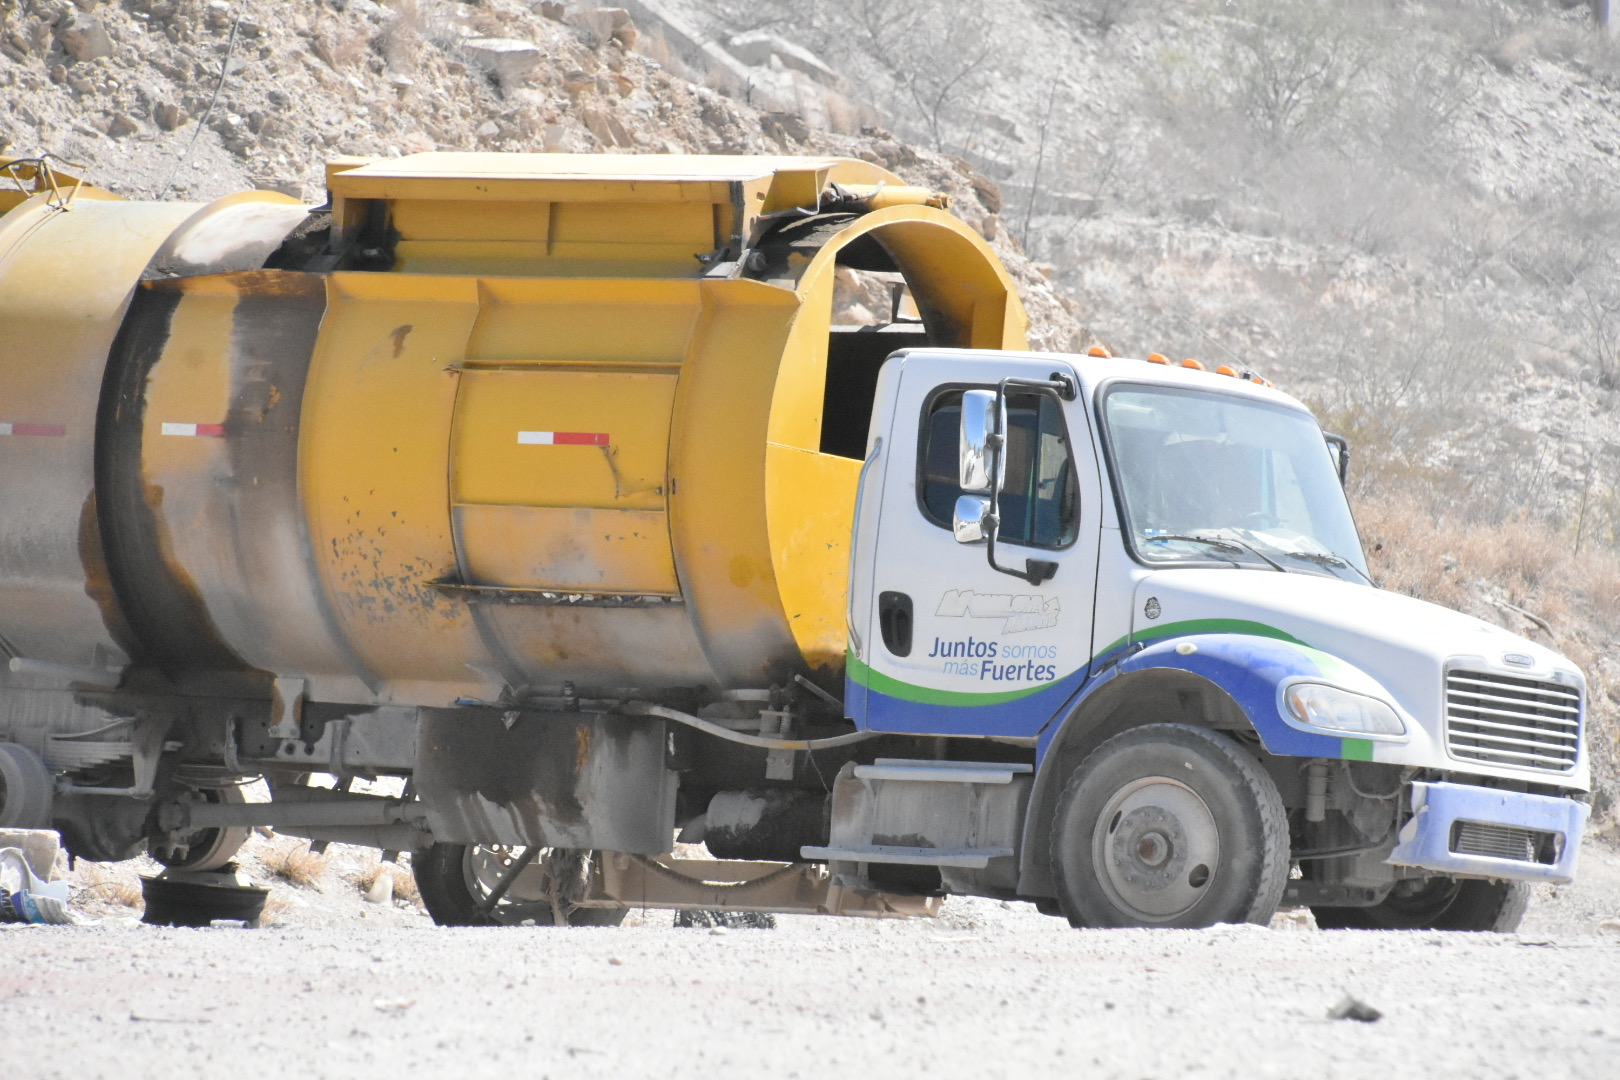 El departamento de Limpieza Municipal carece de suficientes camiones para cubrir la demanda de recolección de basura. (Foto: SERGIO A. RODRÍGUEZ / EL SIGLO COAHUILA)